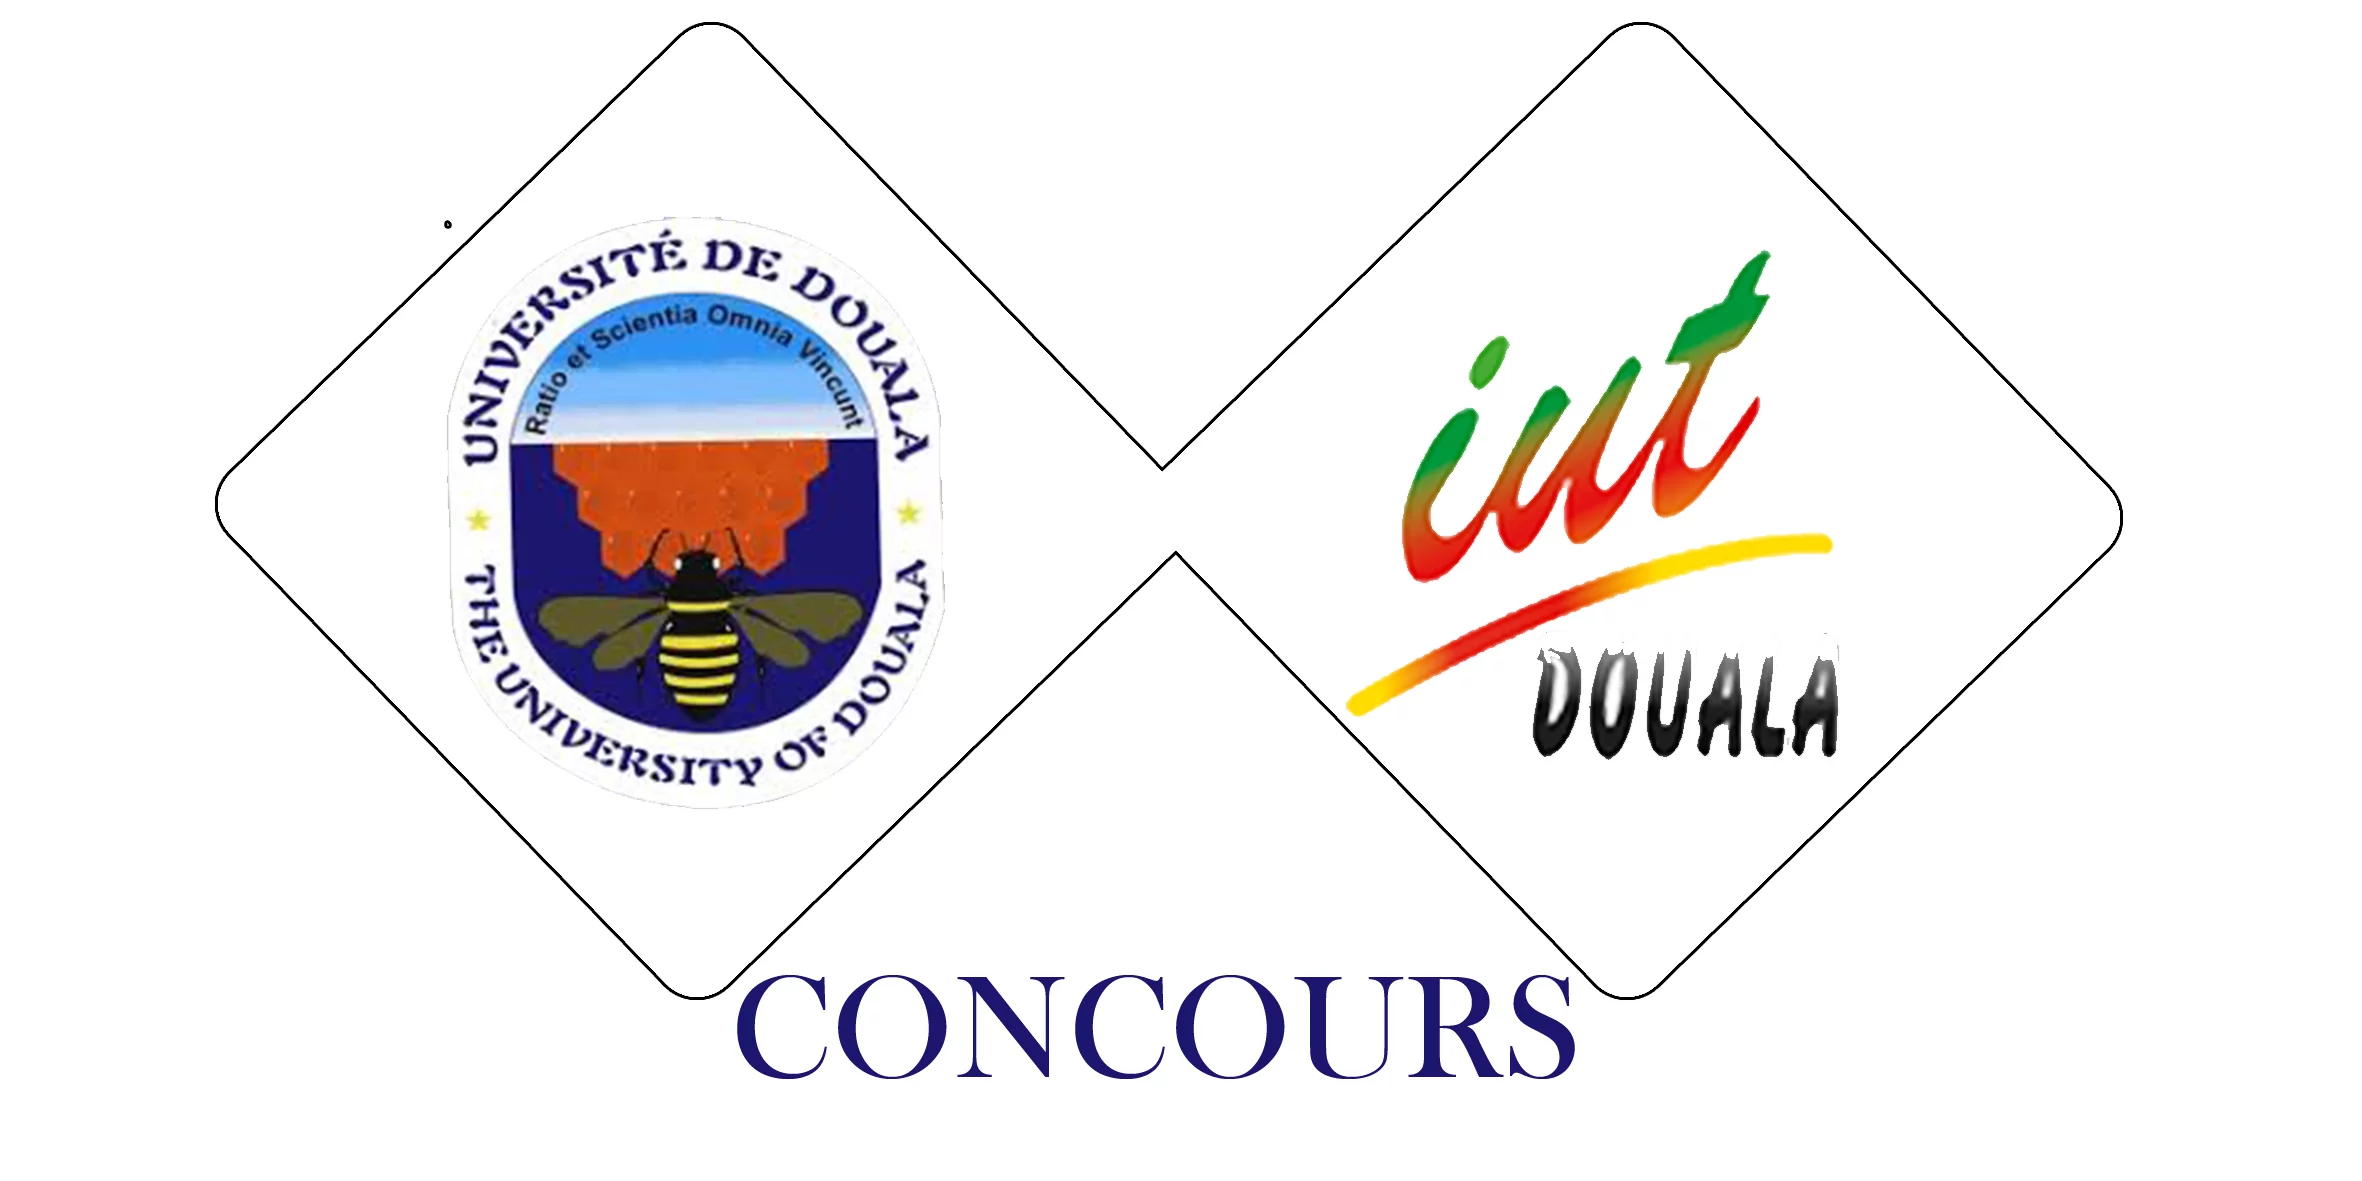 Concours d’entrée en première année (Formation en Alternance) de la Division de la Formation Initiale de l’Institut Universitaire de Technologie (IUT) de l’Université de Douala au titre de l’année académique 2022/2023